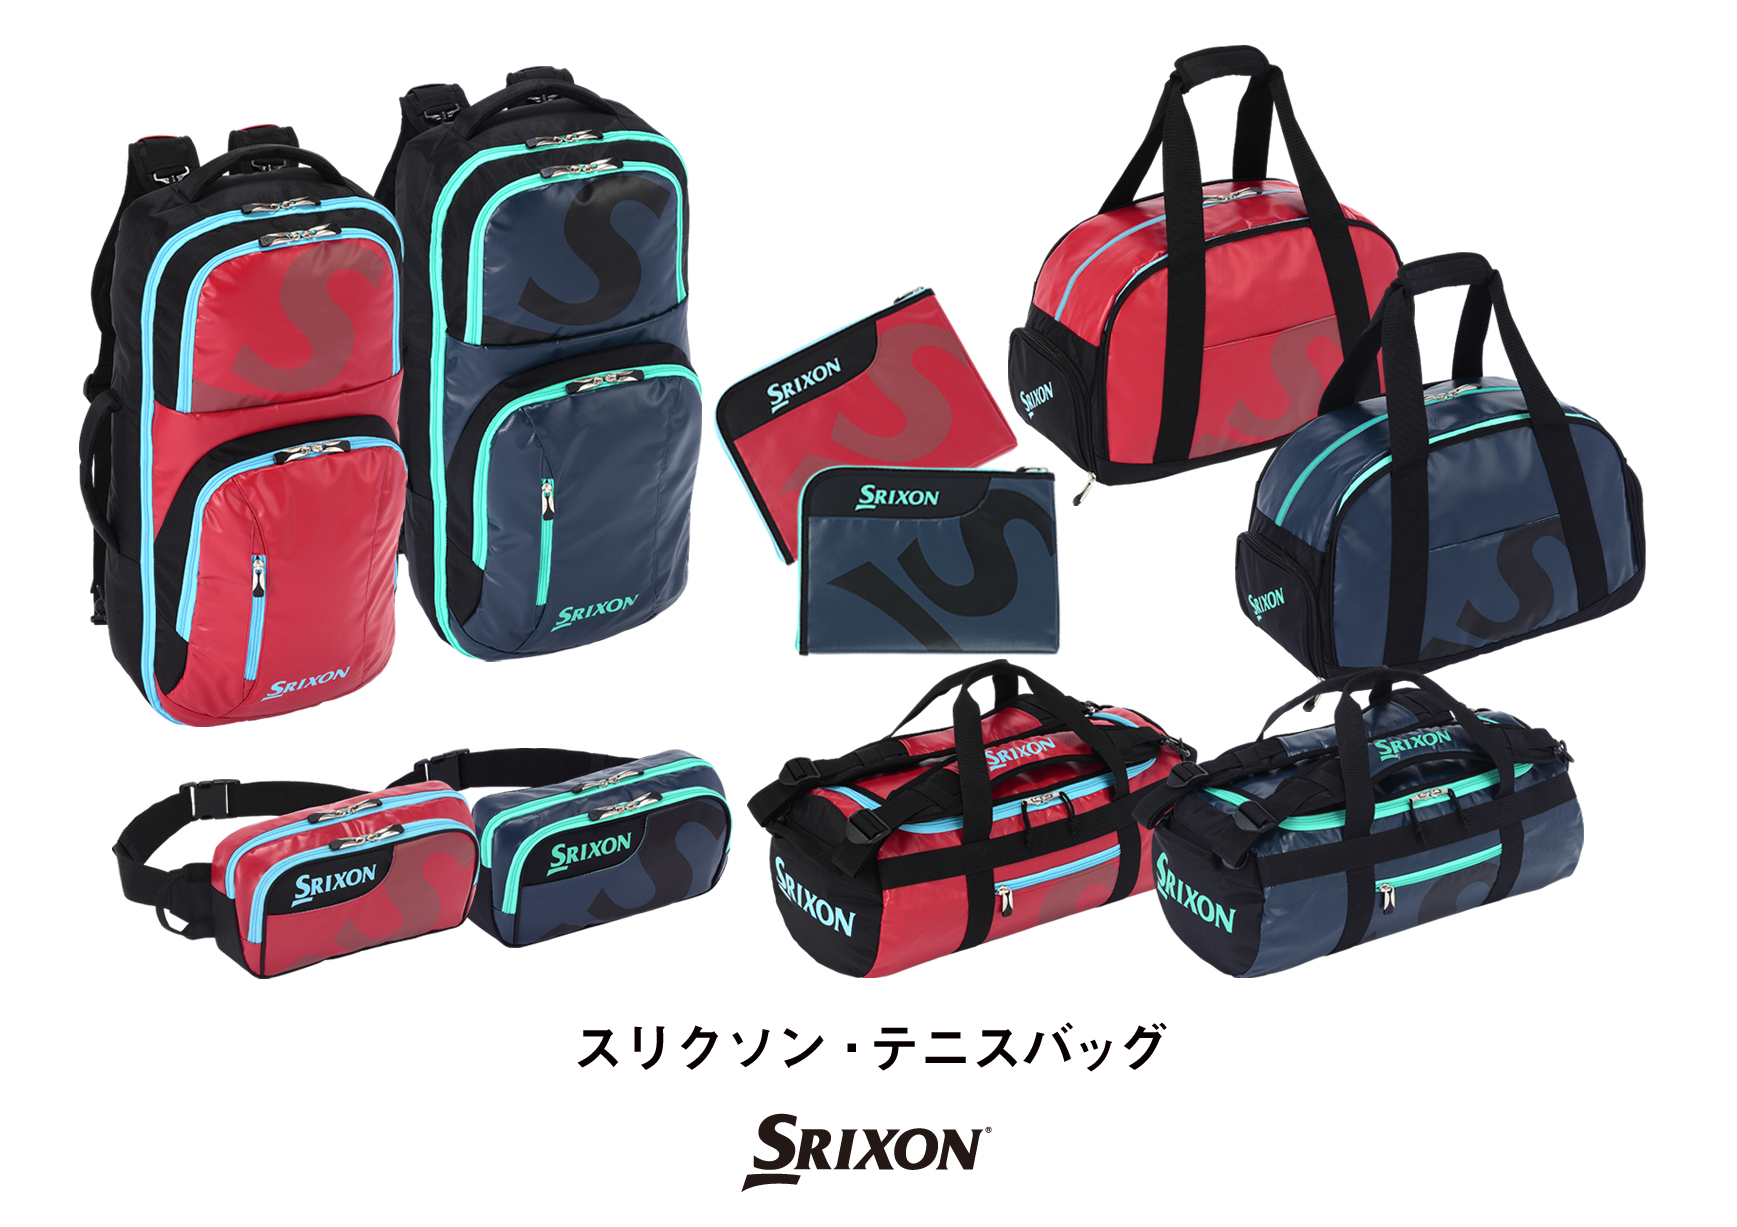 超定番 SRIXON ラケットバッグ sushitai.com.mx